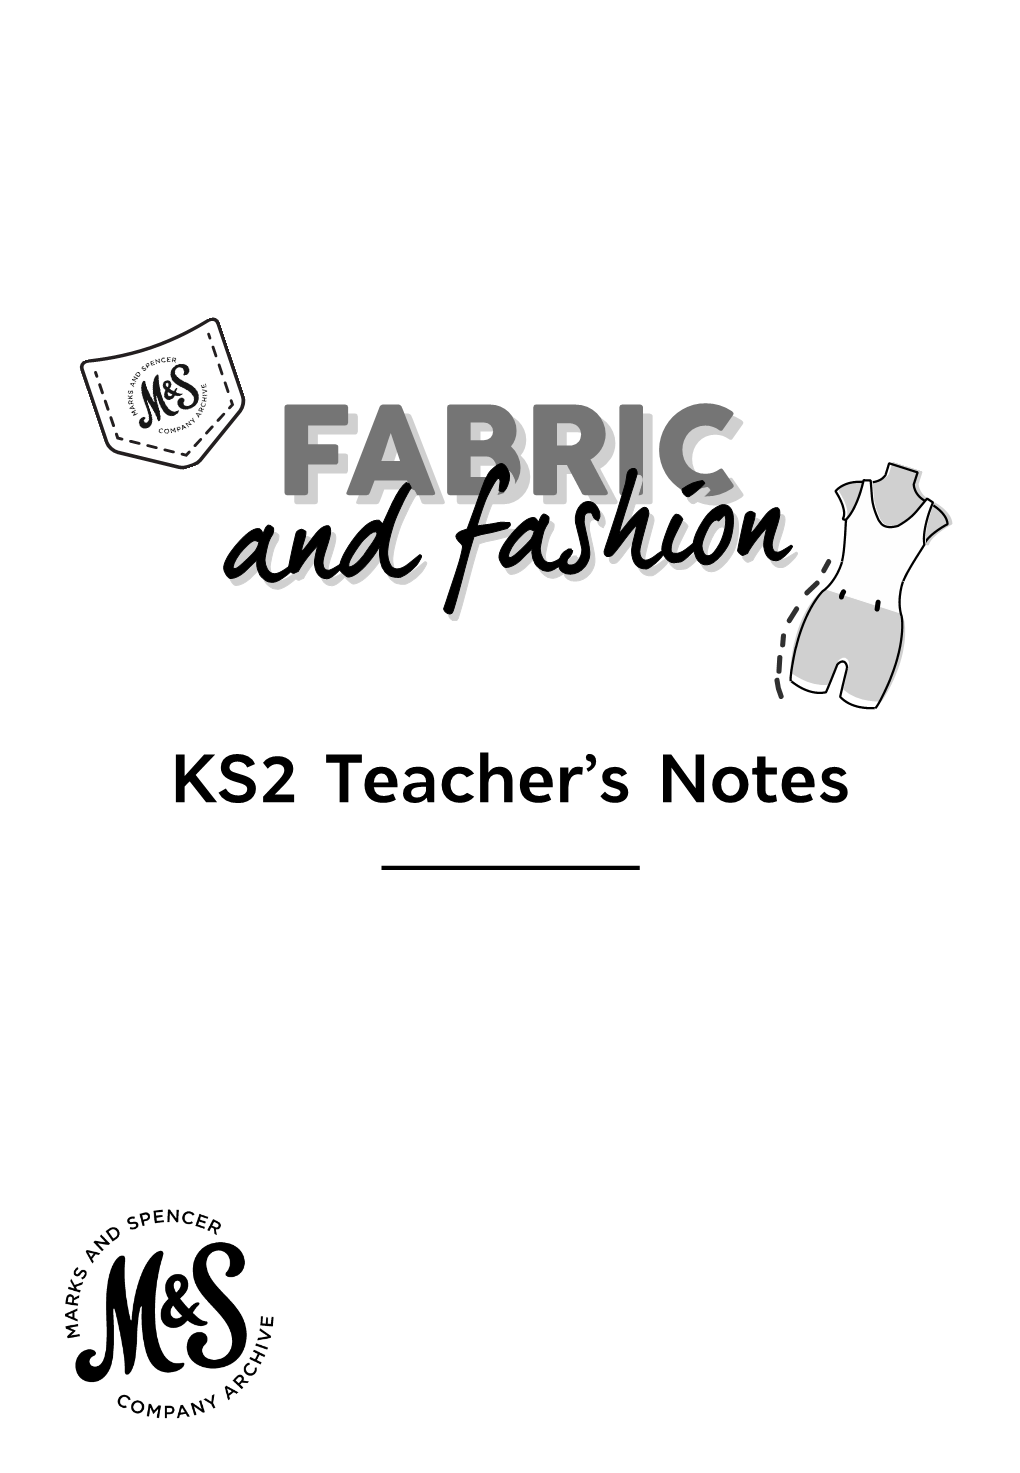 HERE KS2 Teacher's Notes